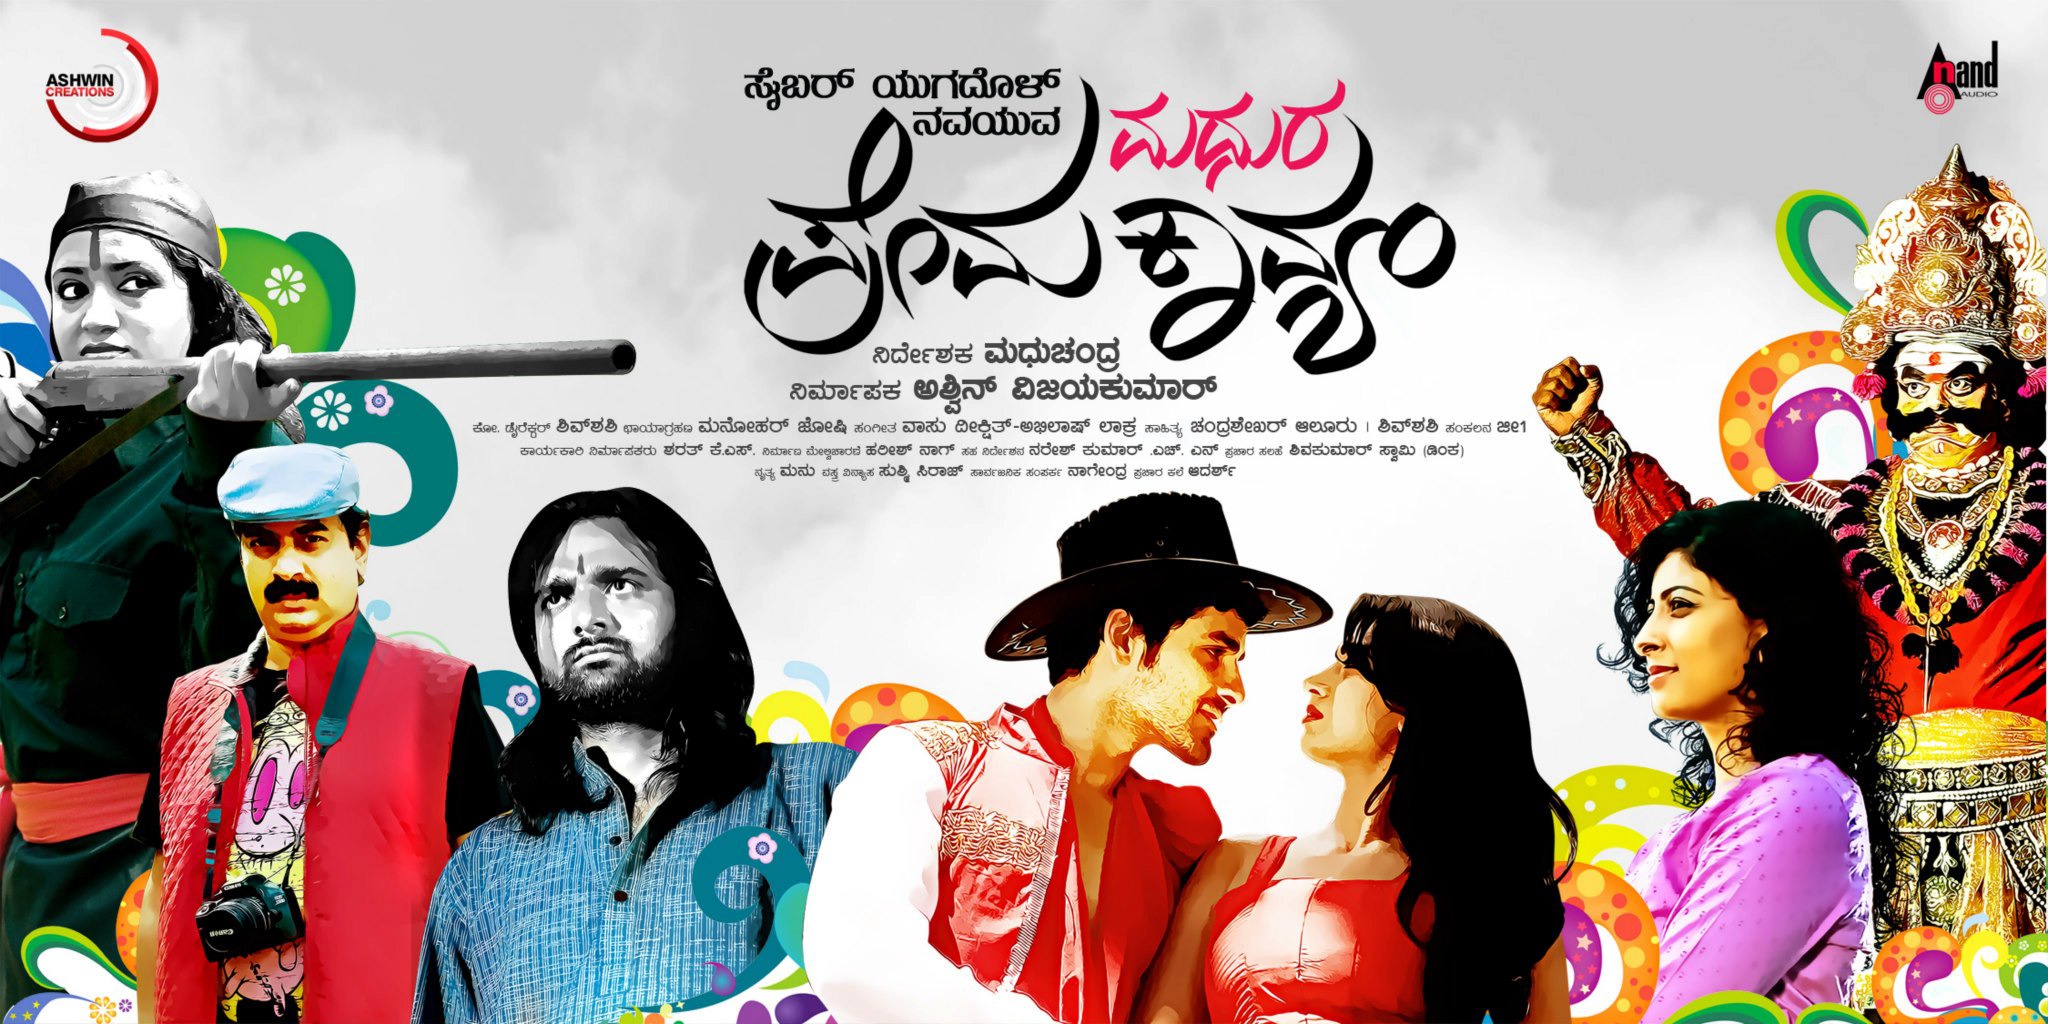 Mega Sized Movie Poster Image for Cyber Yugadol Nava Yuva Madhura Prema Kavyam (#3 of 7)